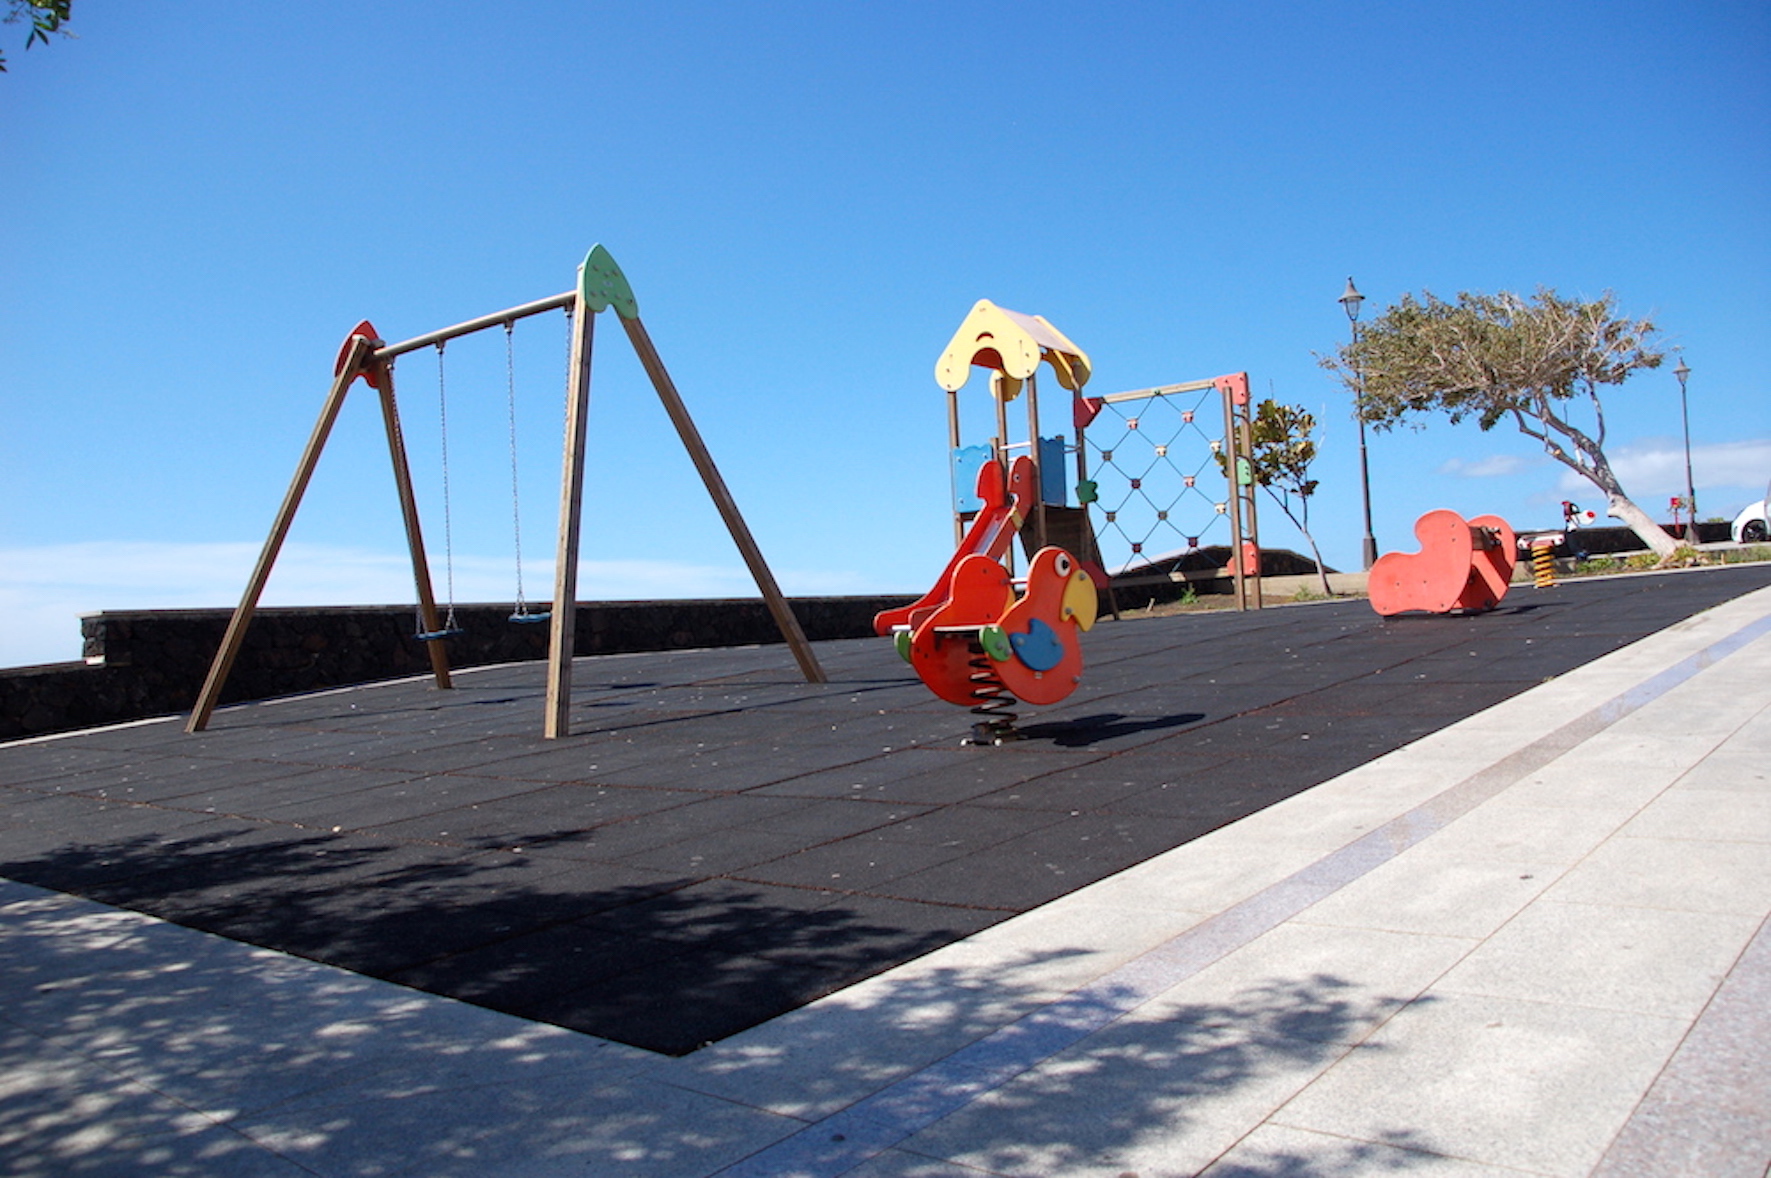 IpH-IUC propone la adaptación de los parques infantiles como espacios accesibles